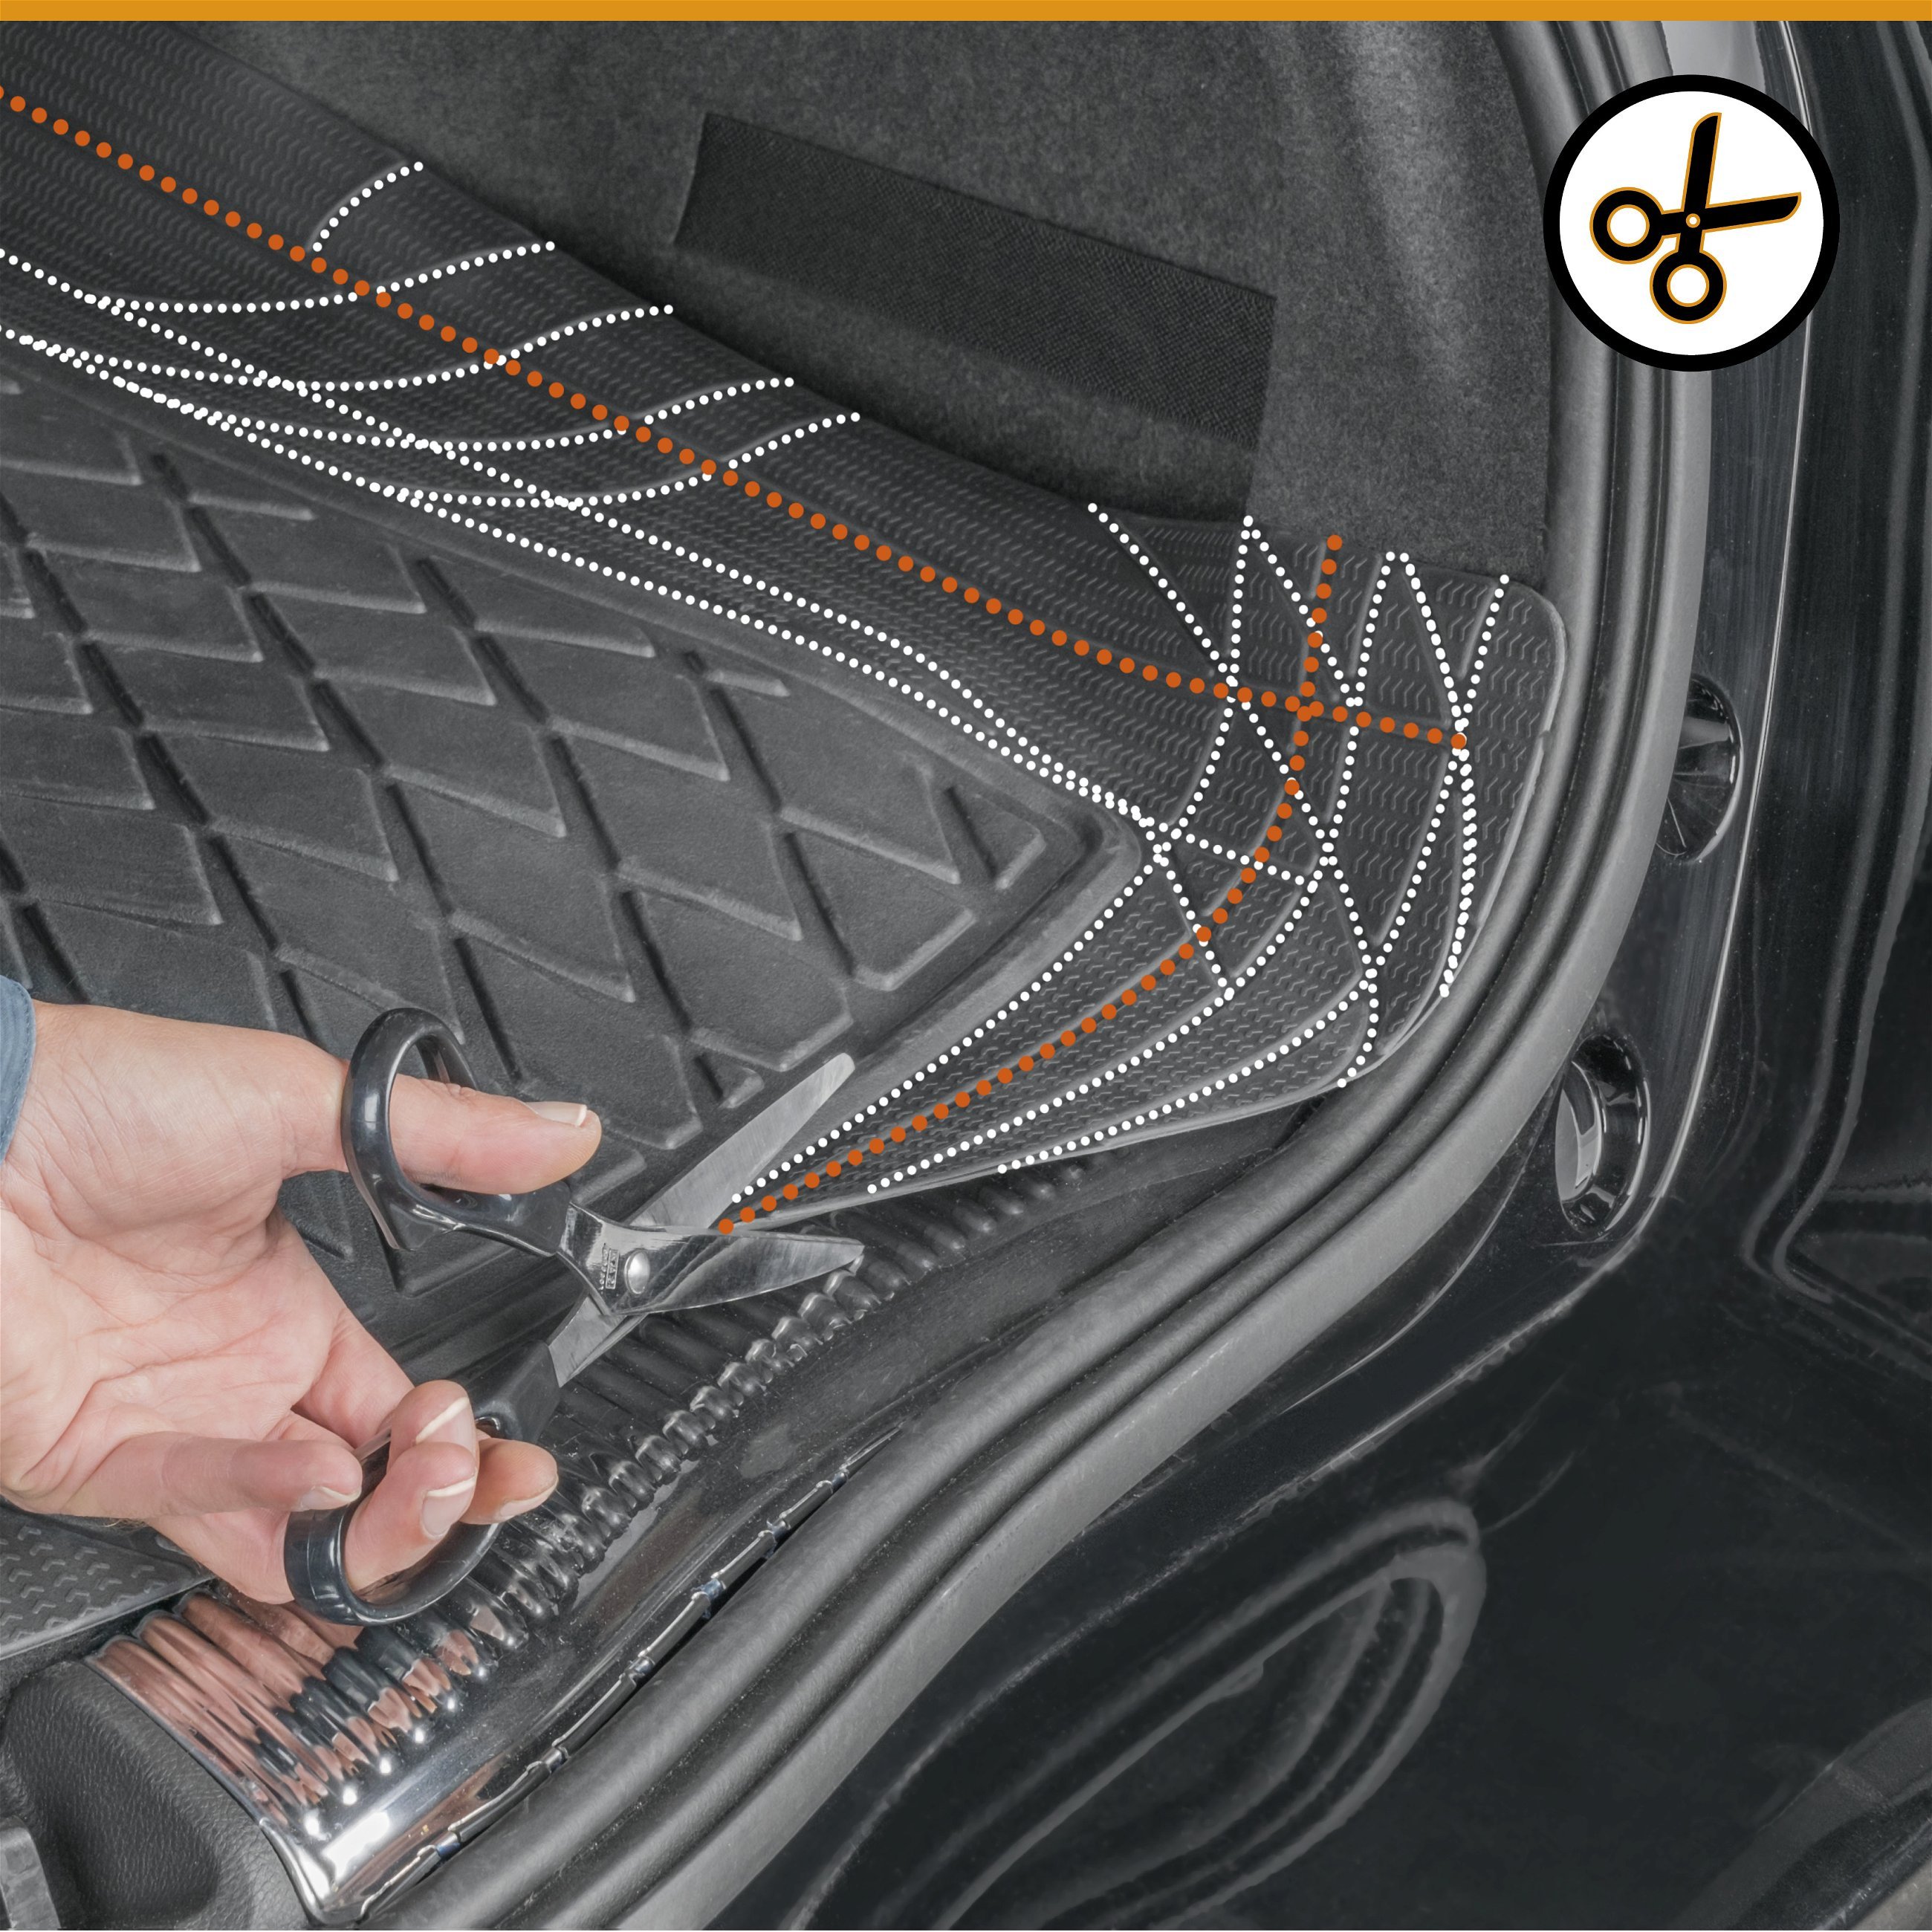 CarComfort kofferbakmat Safeguard, afmeting 120x80 cm, universele op maat gesneden rubbermat auto, universele kofferbakbescherming, anti-slip mat